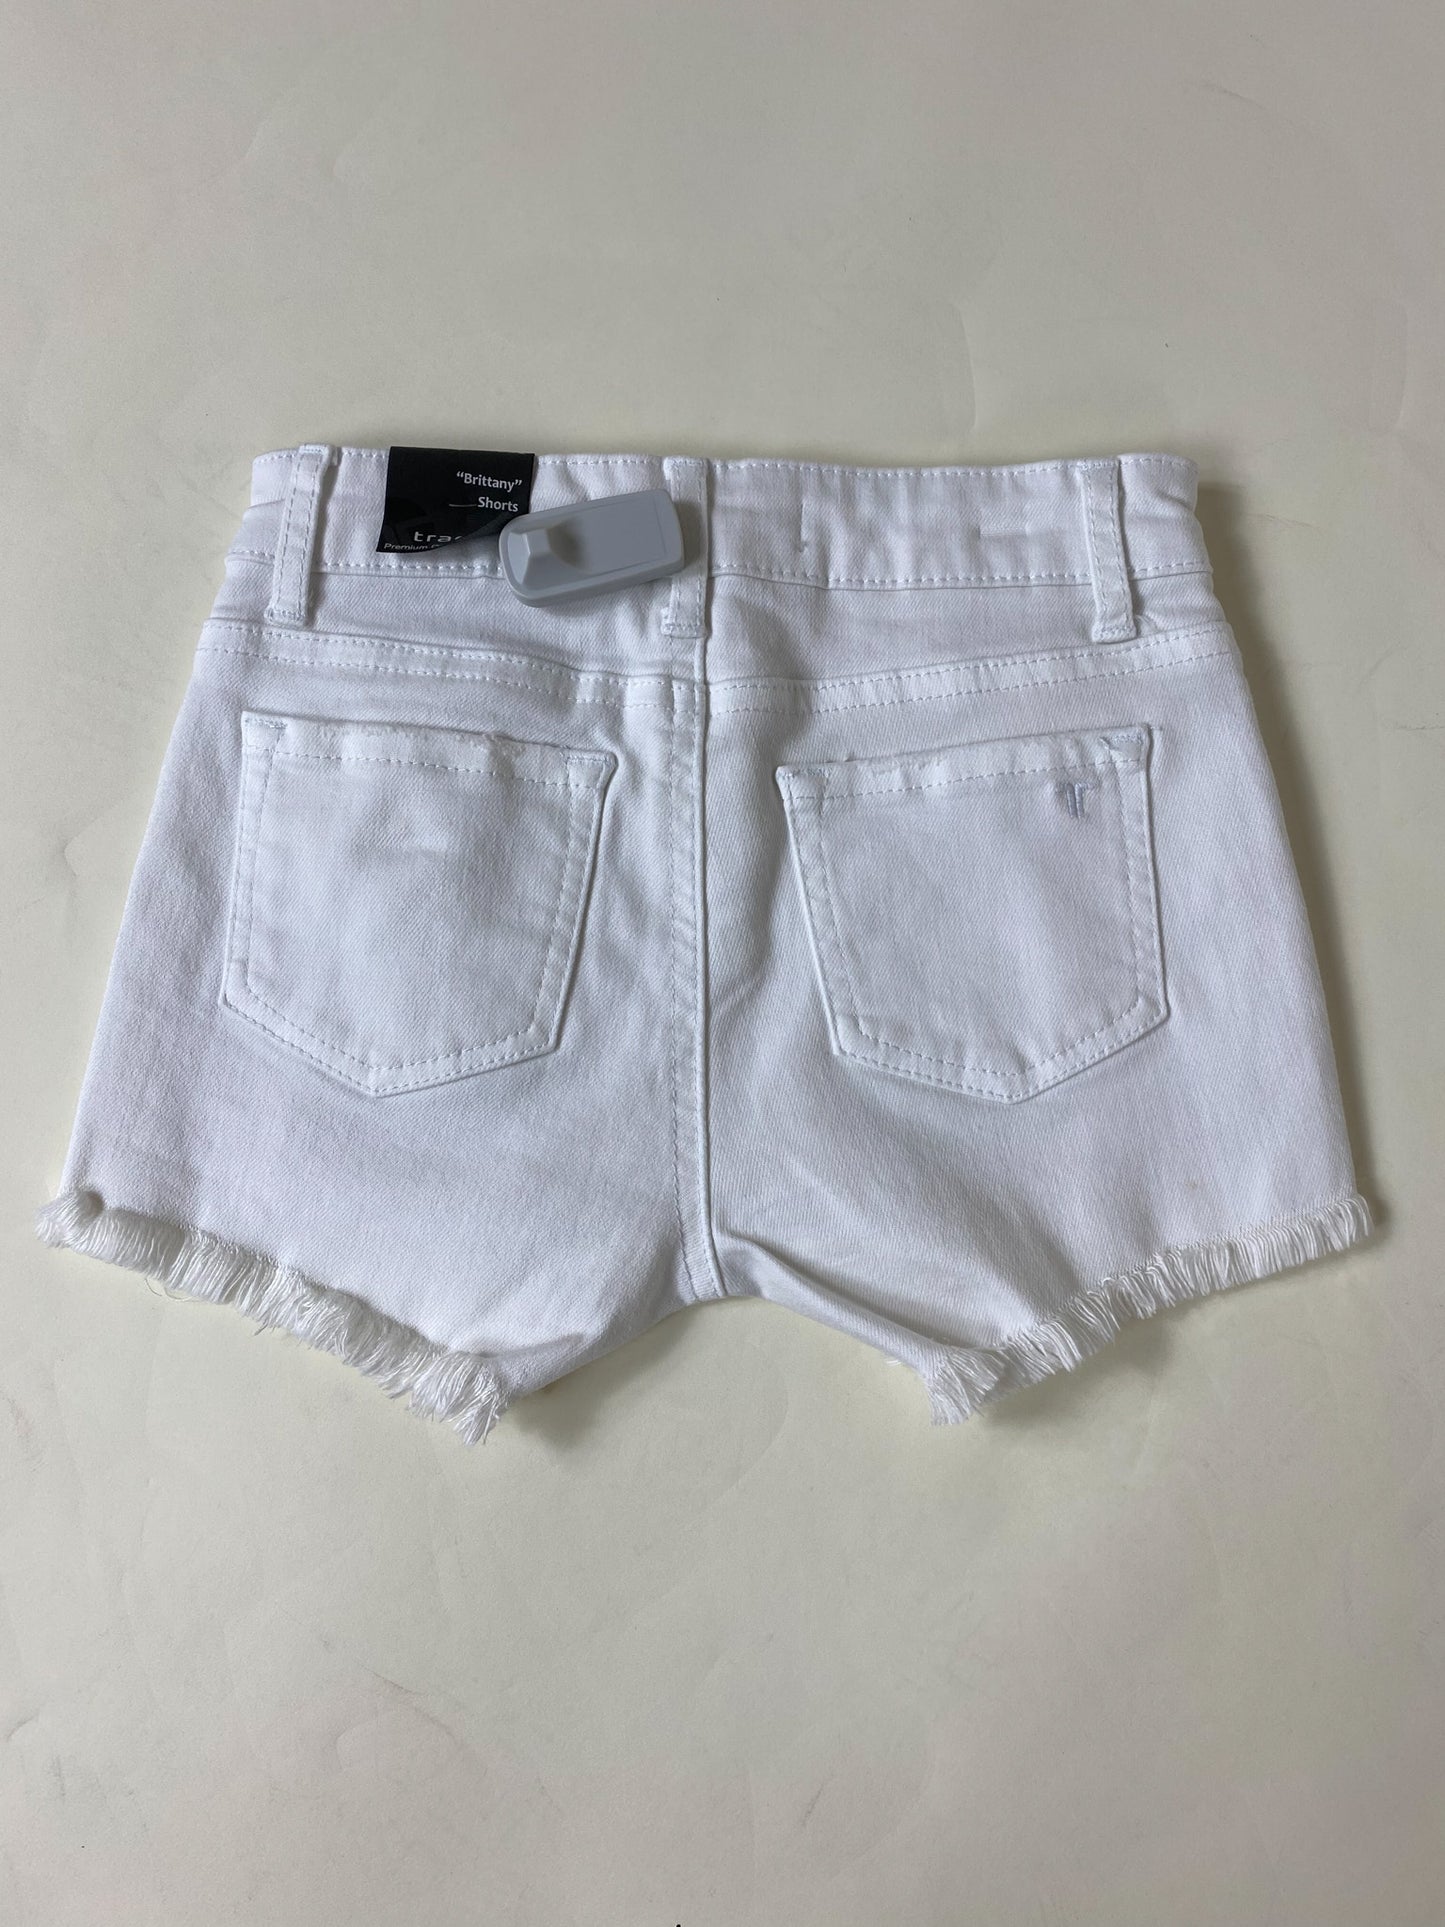 Youth Girls White Denim Shorts